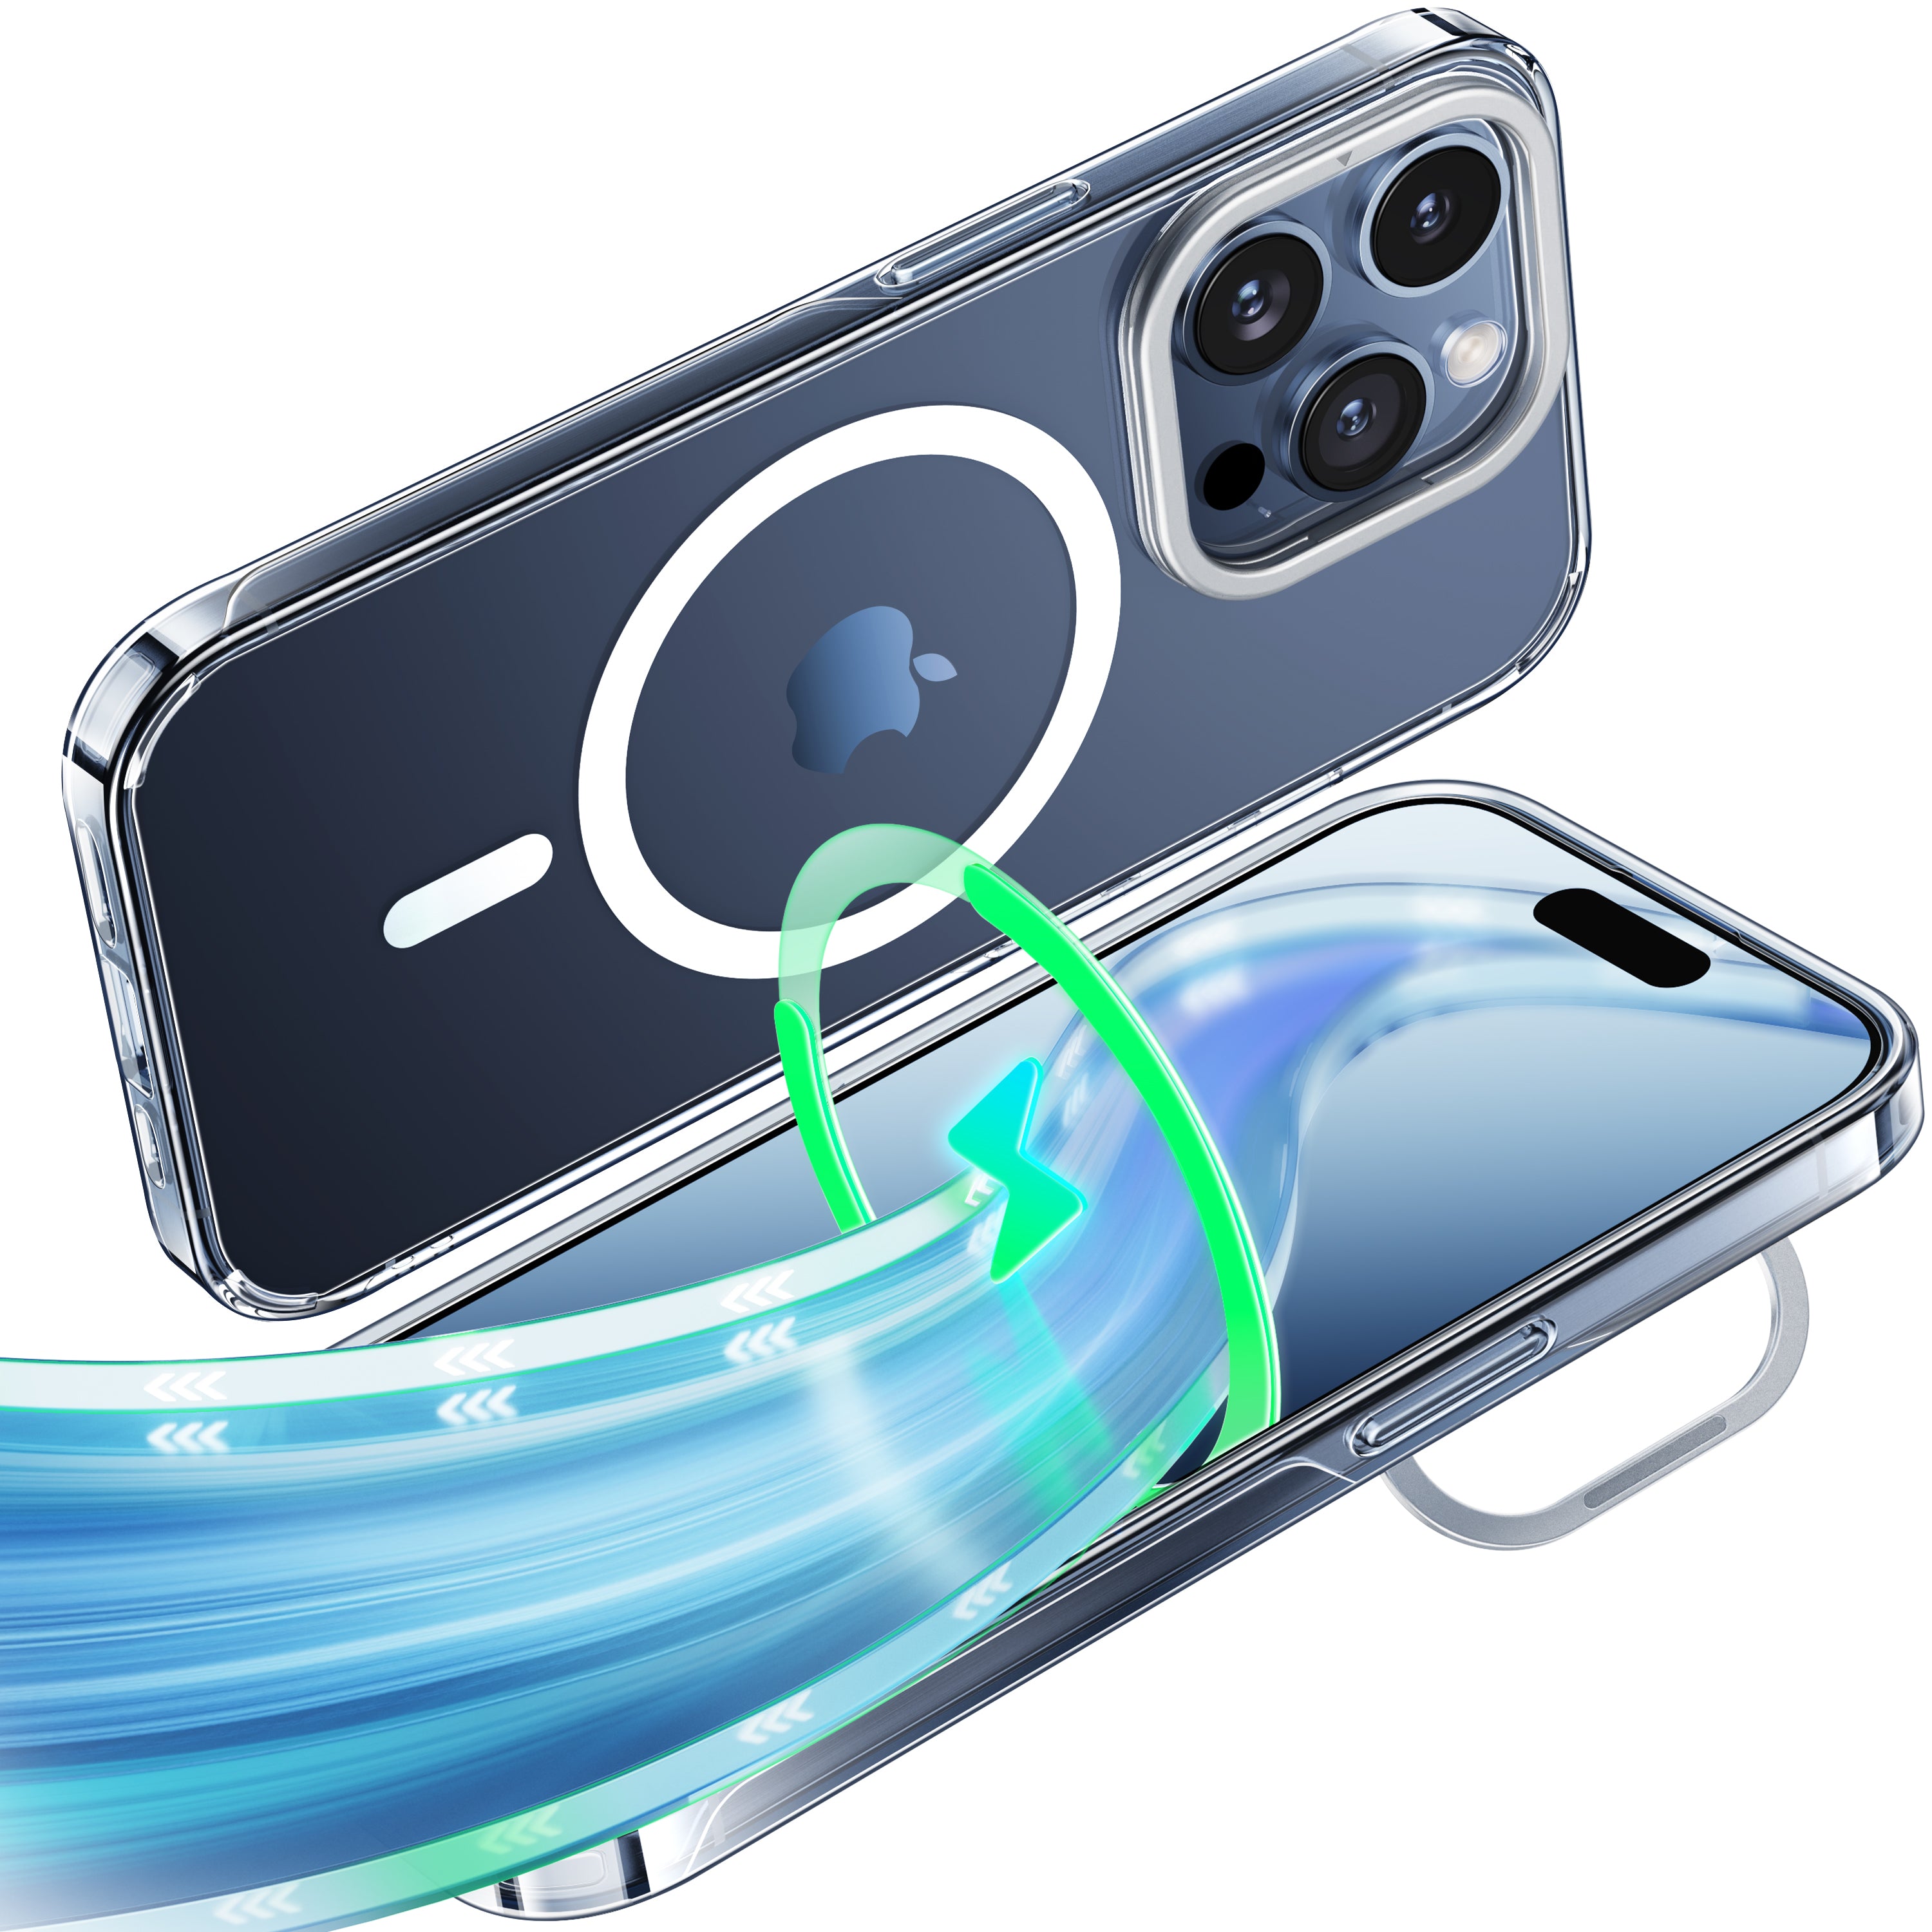 CASEKOO iPhone 黄ばみ防止クリア電話ケース キックスタンド付き MagSafe 対応 - クリアロックシリーズ レンズスタンドバージョン